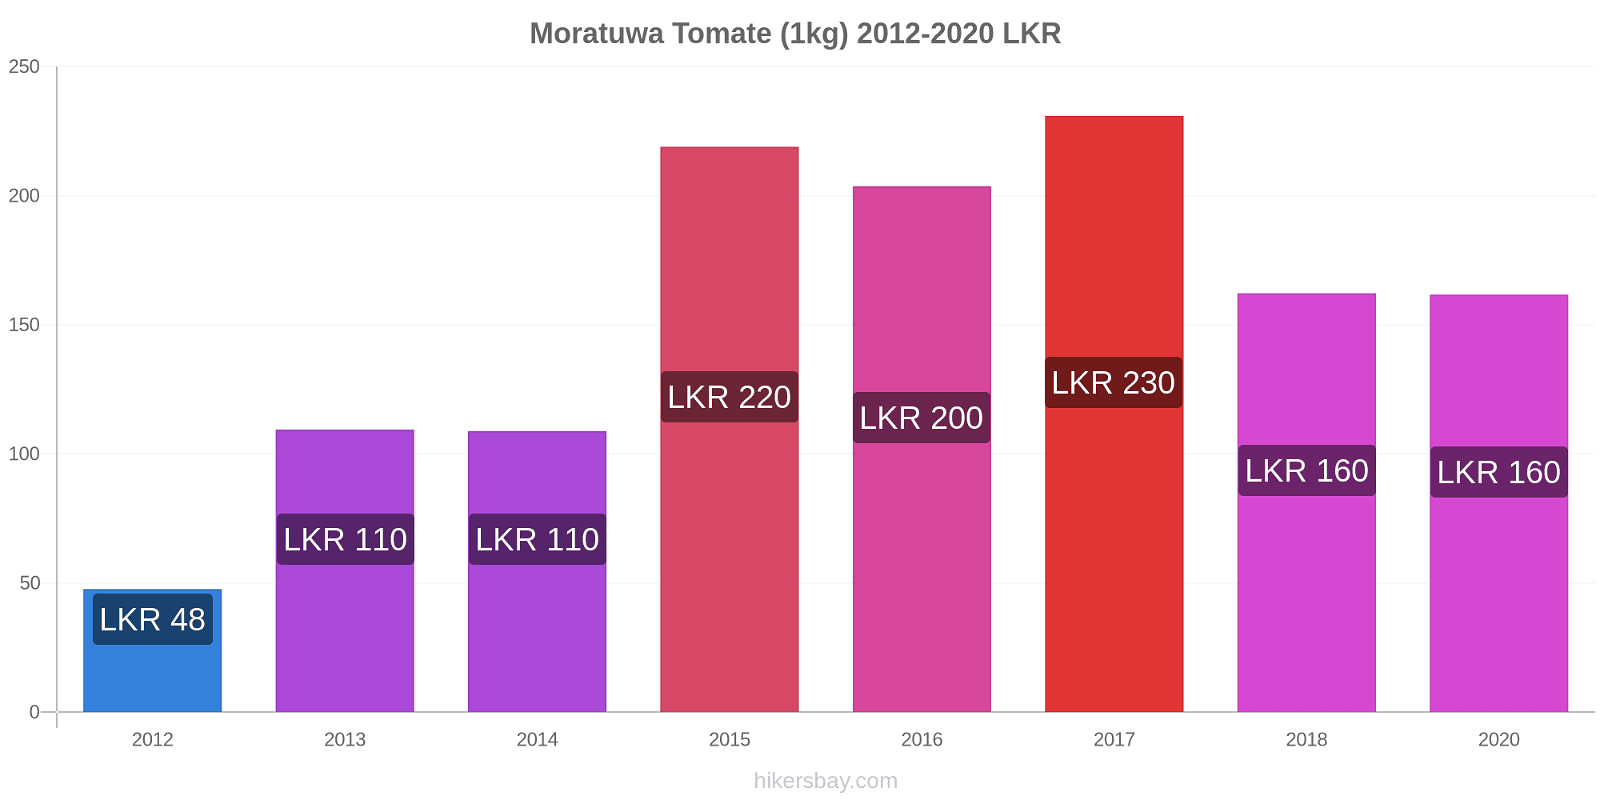 Moratuwa cambios de precios Tomate (1kg) hikersbay.com